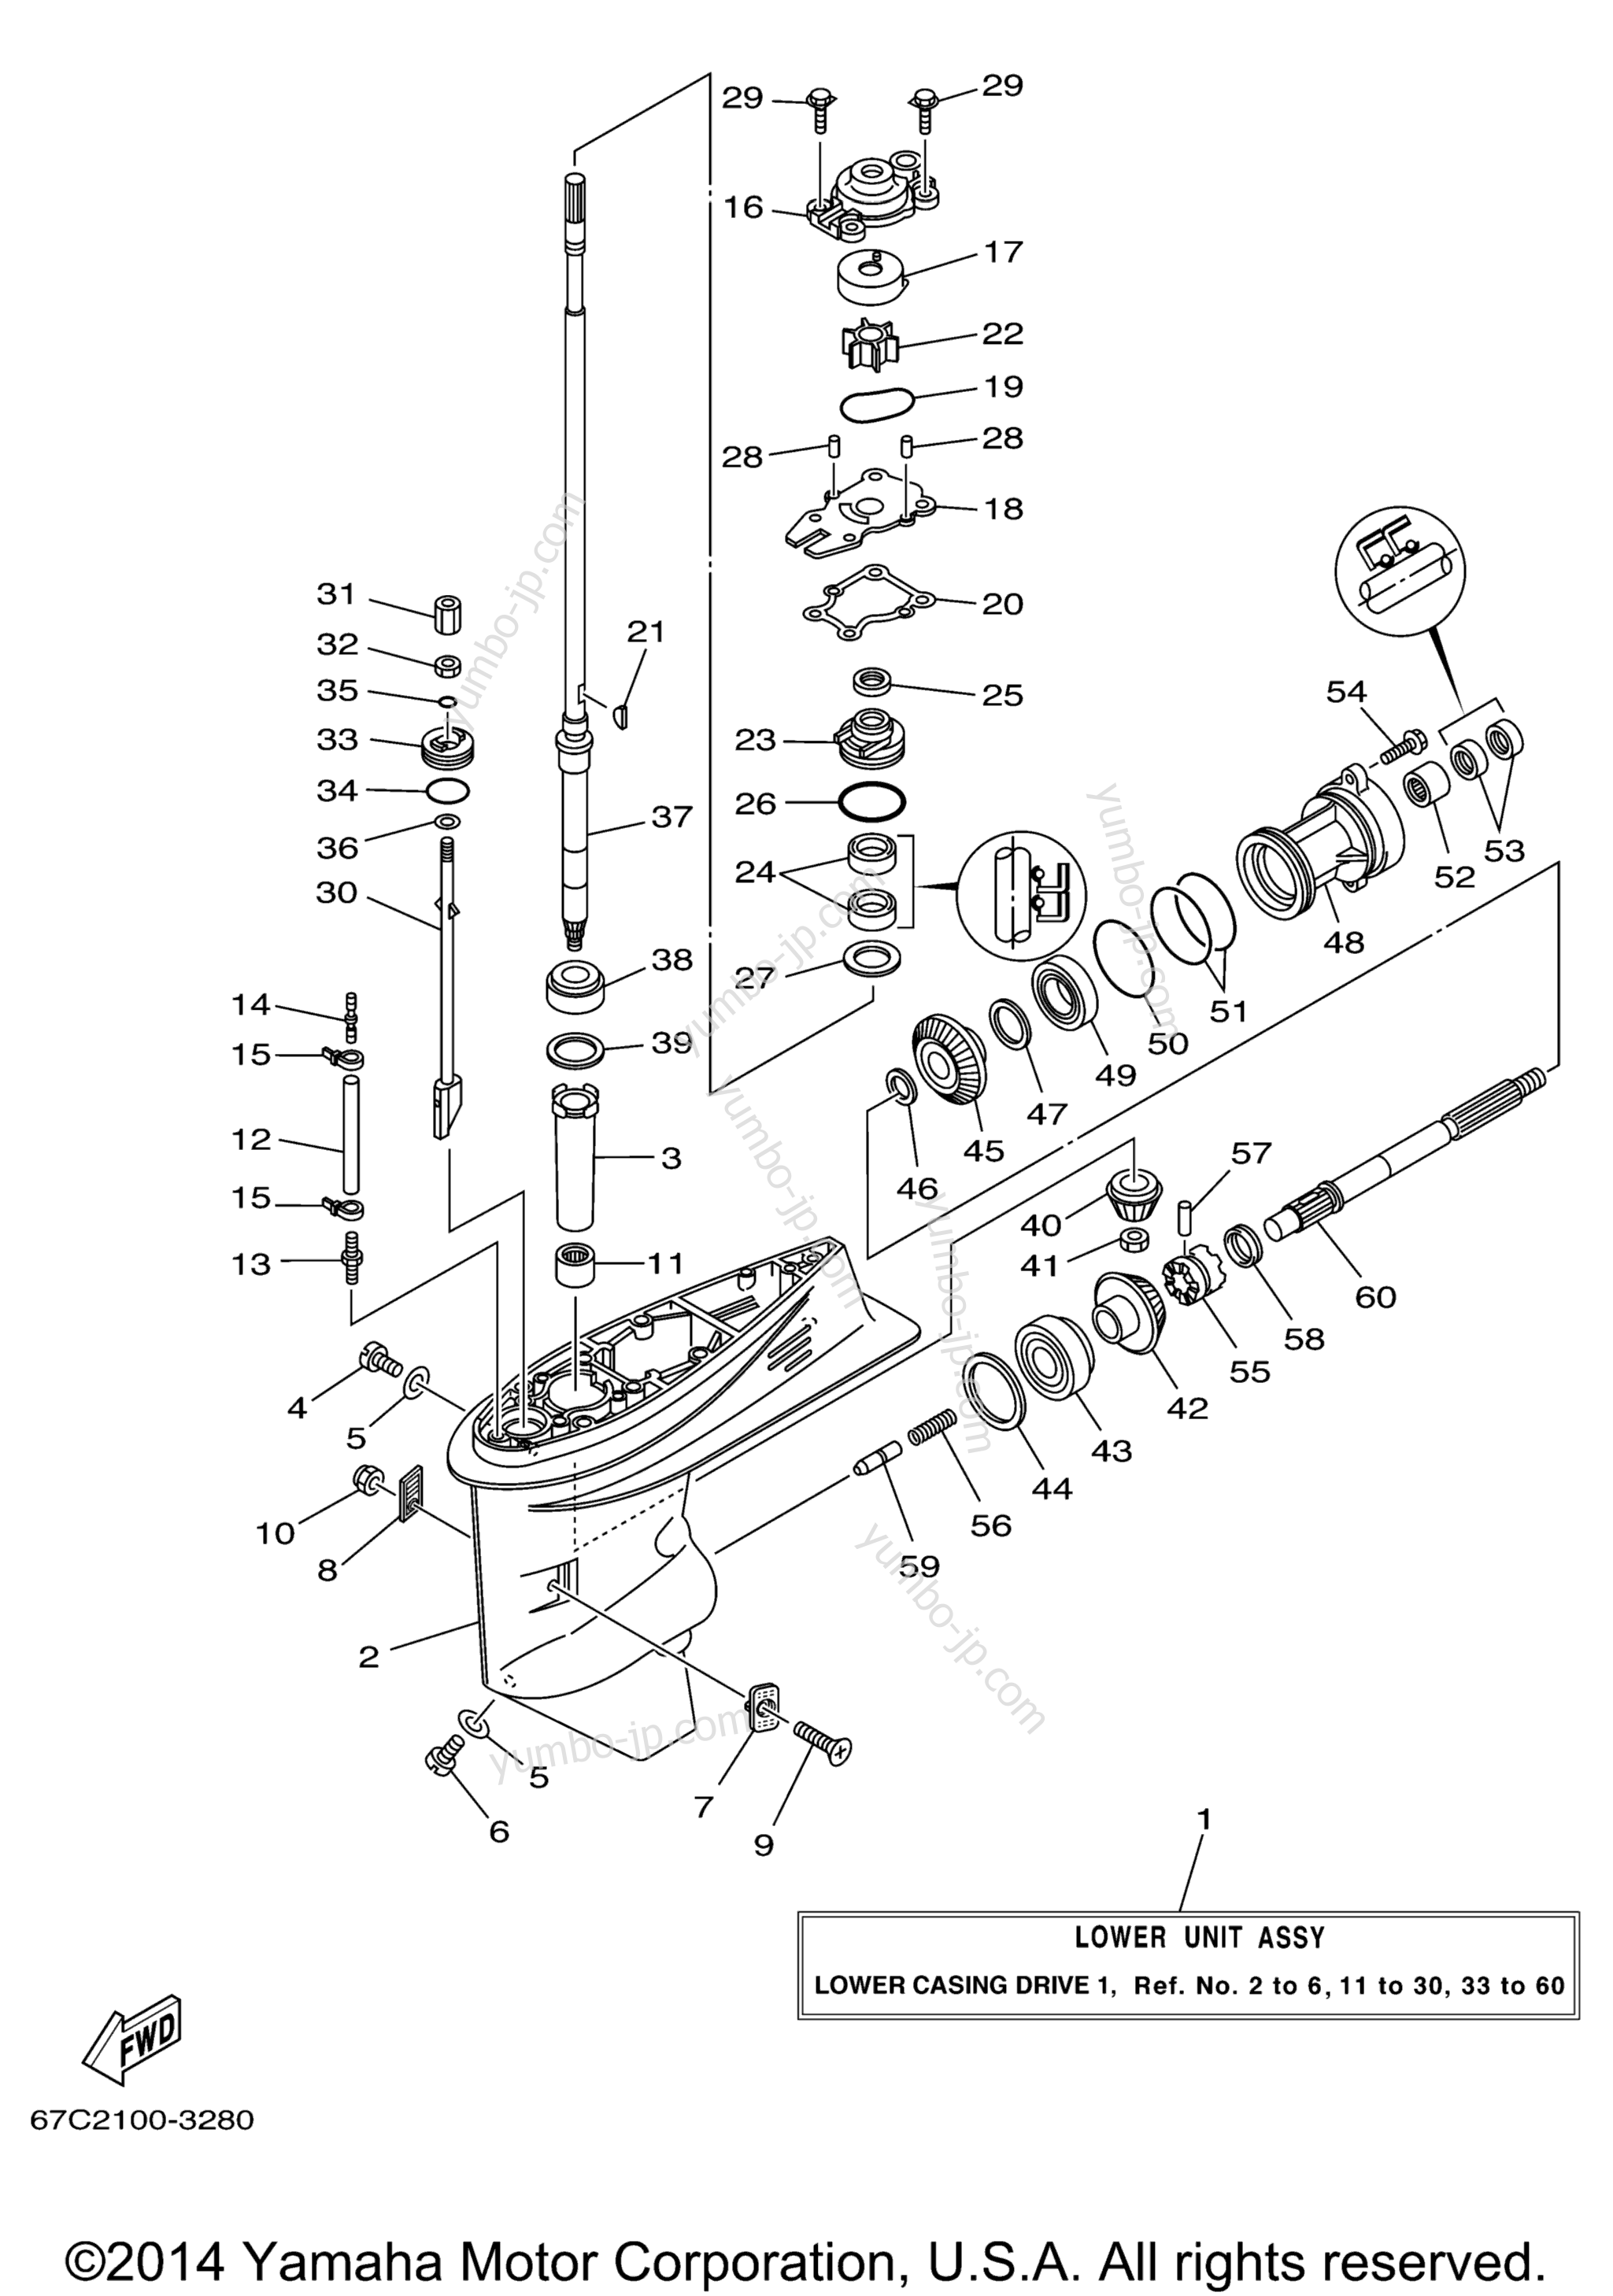 Lower Casing Drive 1 для лодочных моторов YAMAHA F40TLRD_MSHD_MLHD_MJHD_ELRD (F40MJHD) 2005 г.